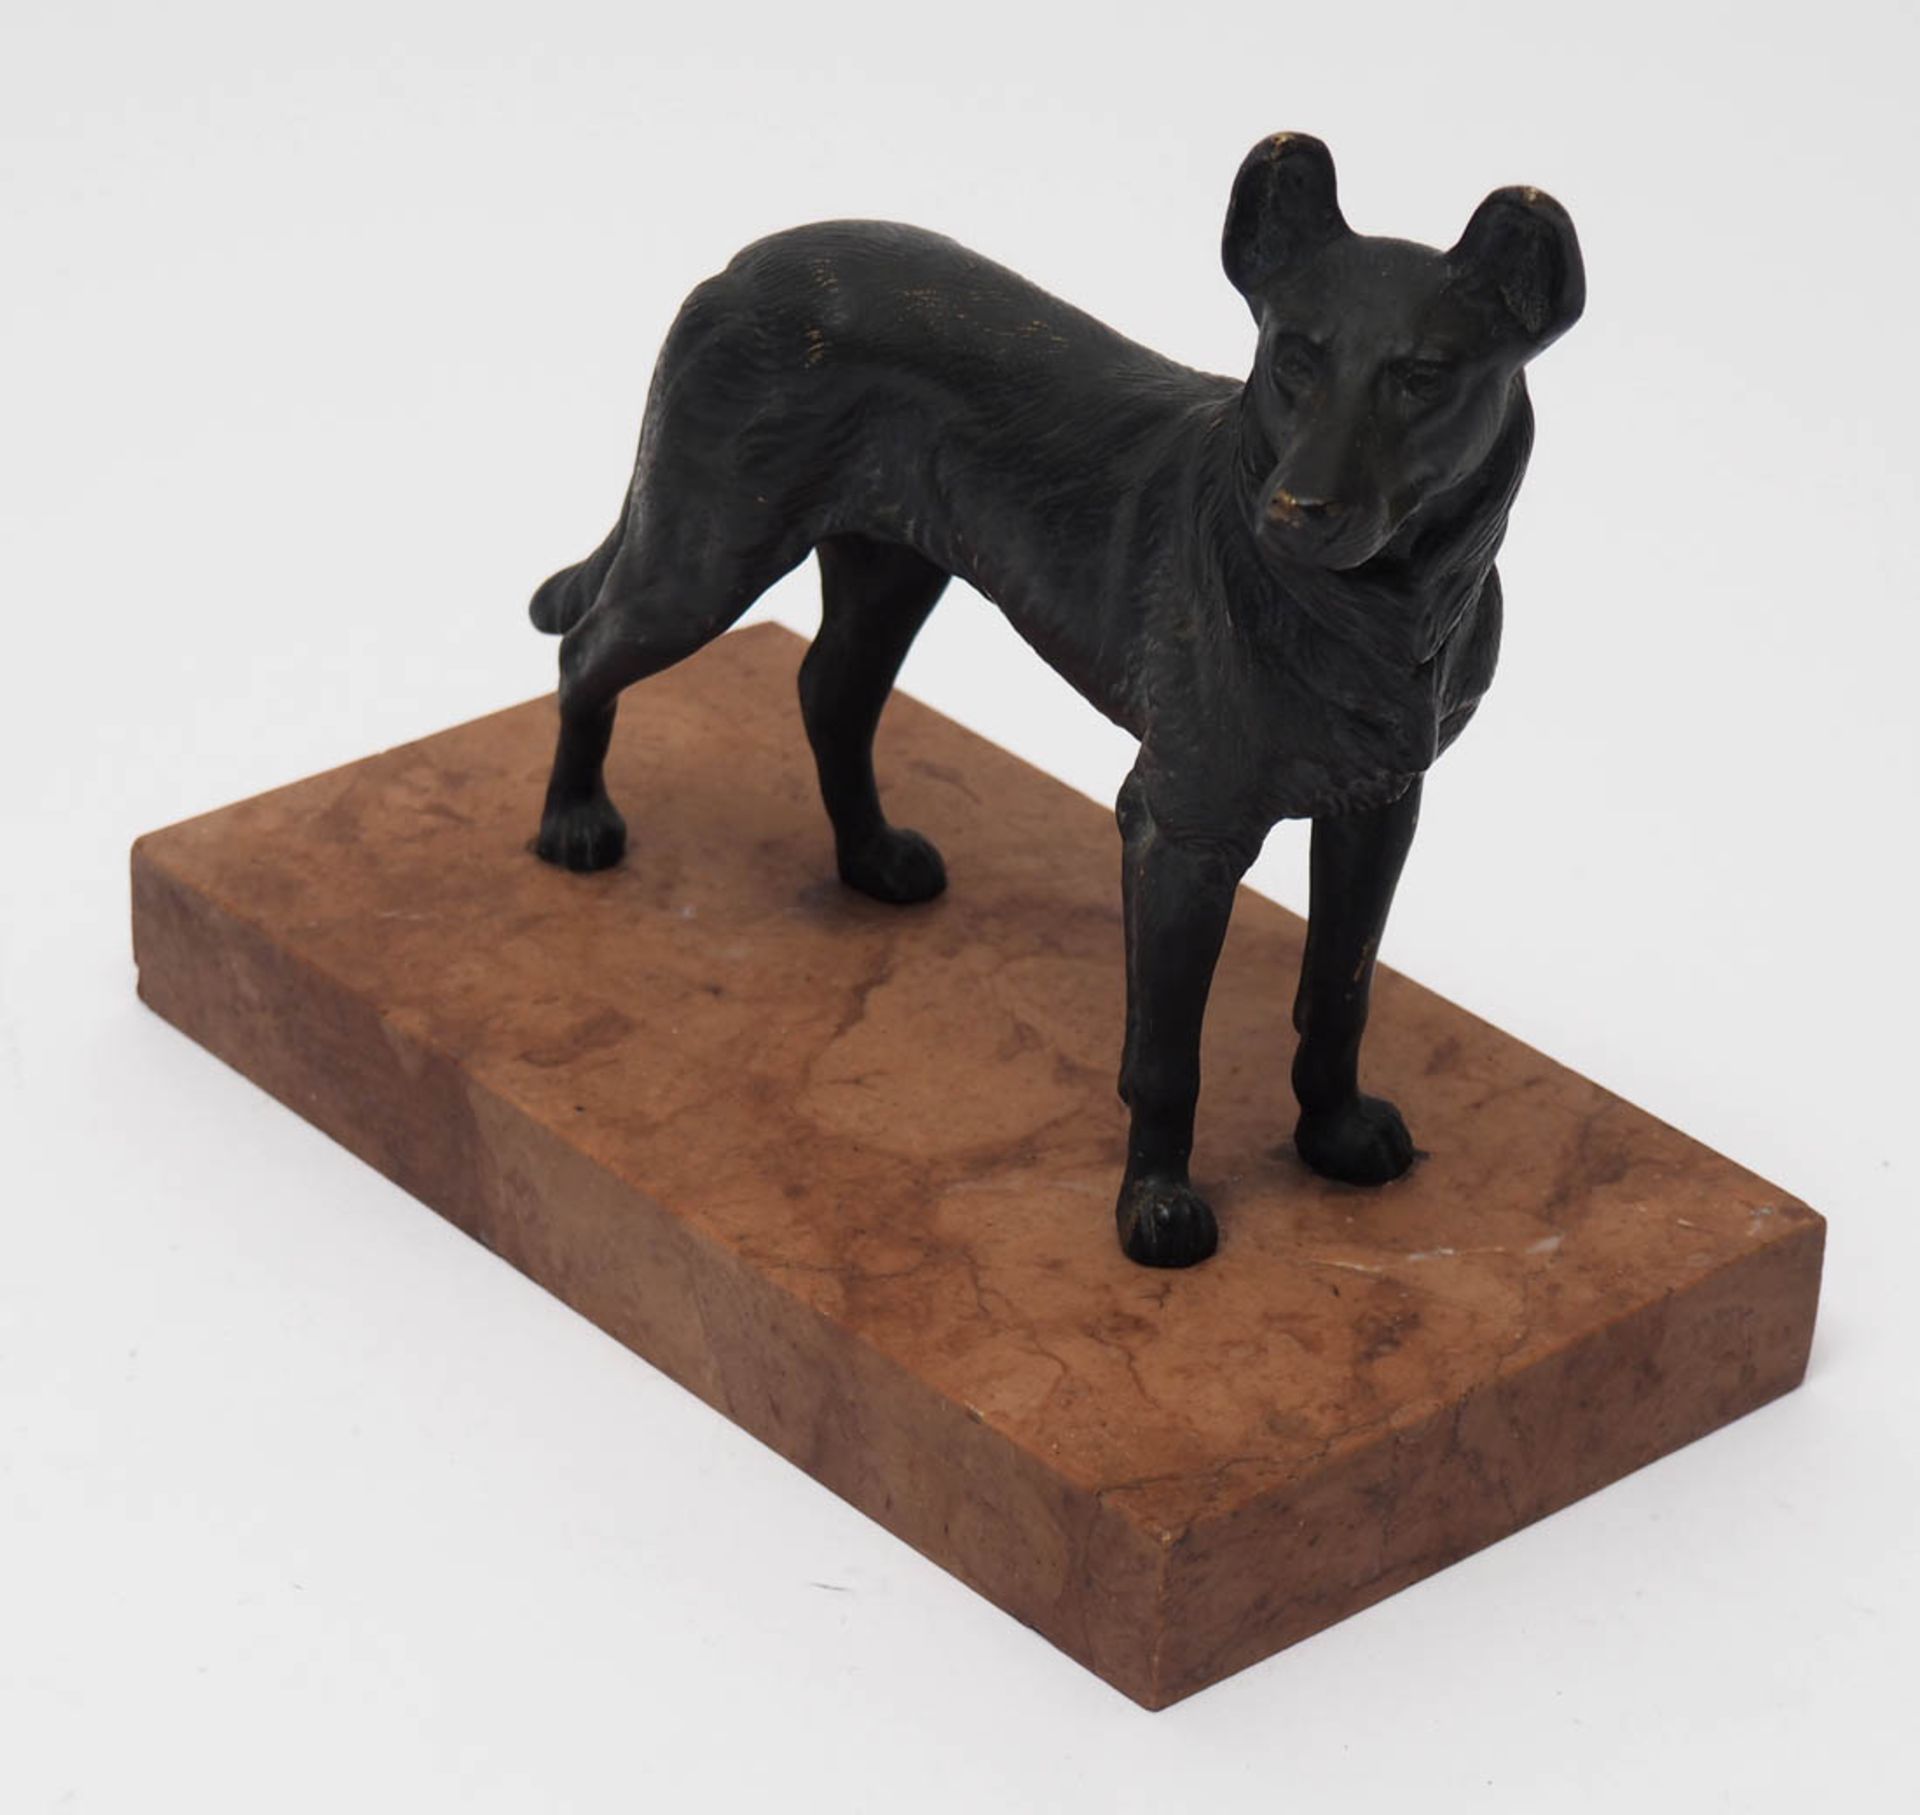 Tierfigurine Auf rotem Marmorsockel stehender Schäferhund. Bronze, schwarz patiniert. H.13cm ohne